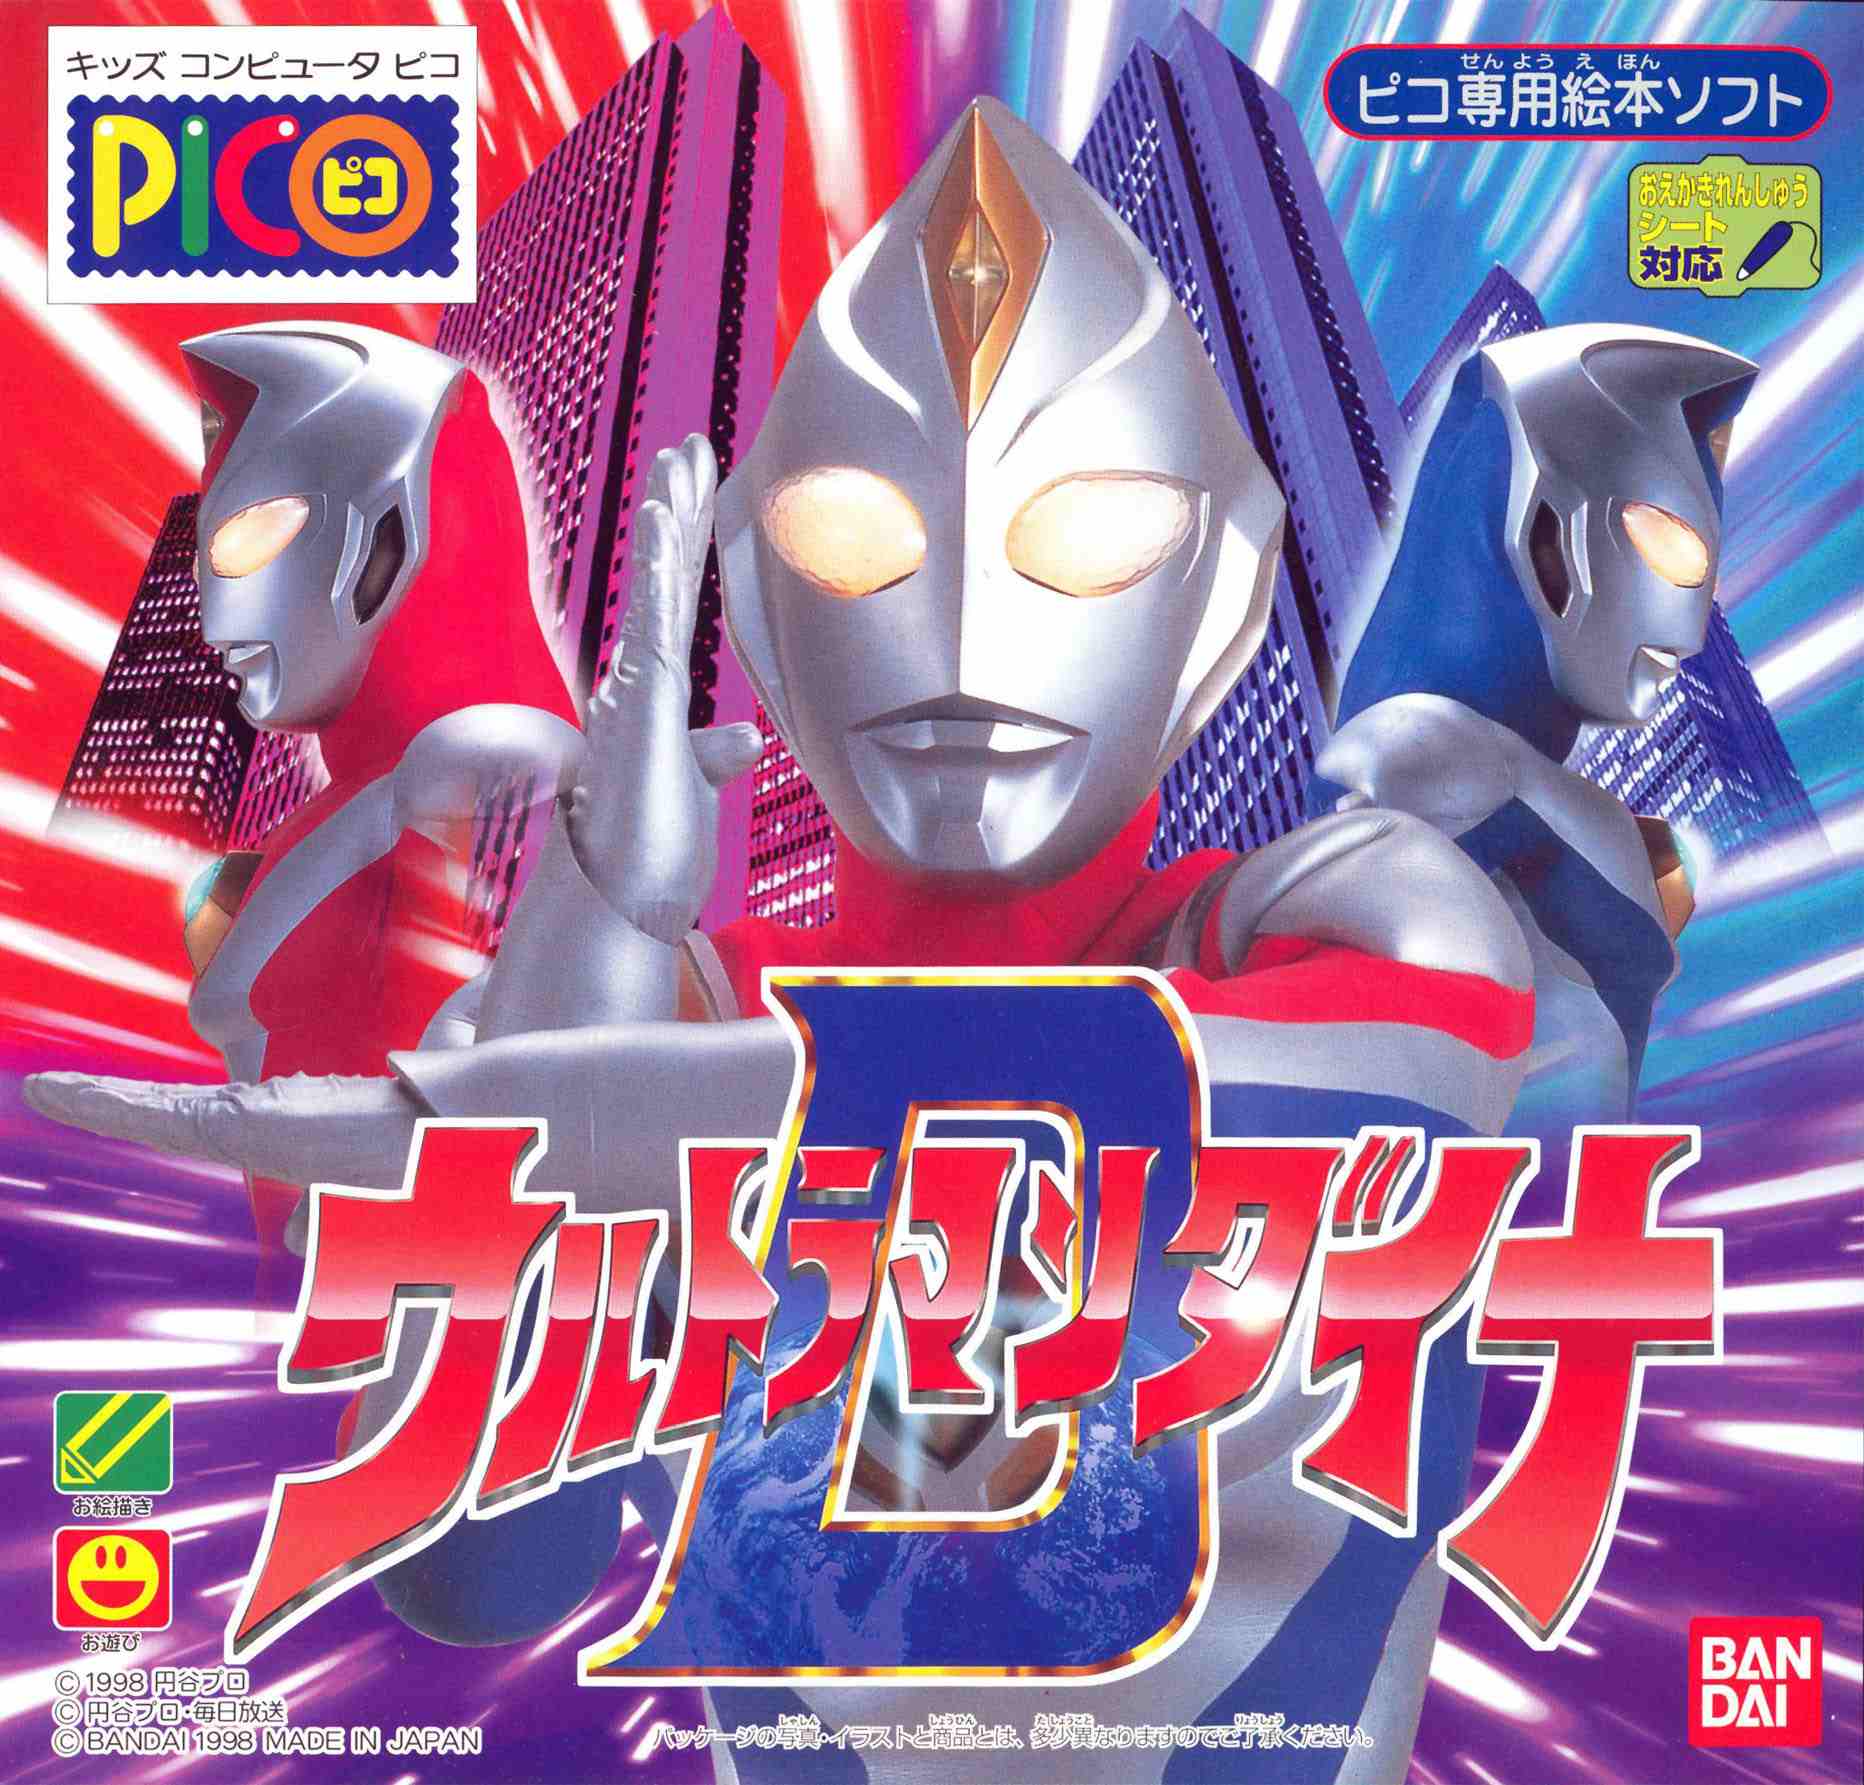  Ultraman  Tiga ROM Sega Pico Emulator Games 